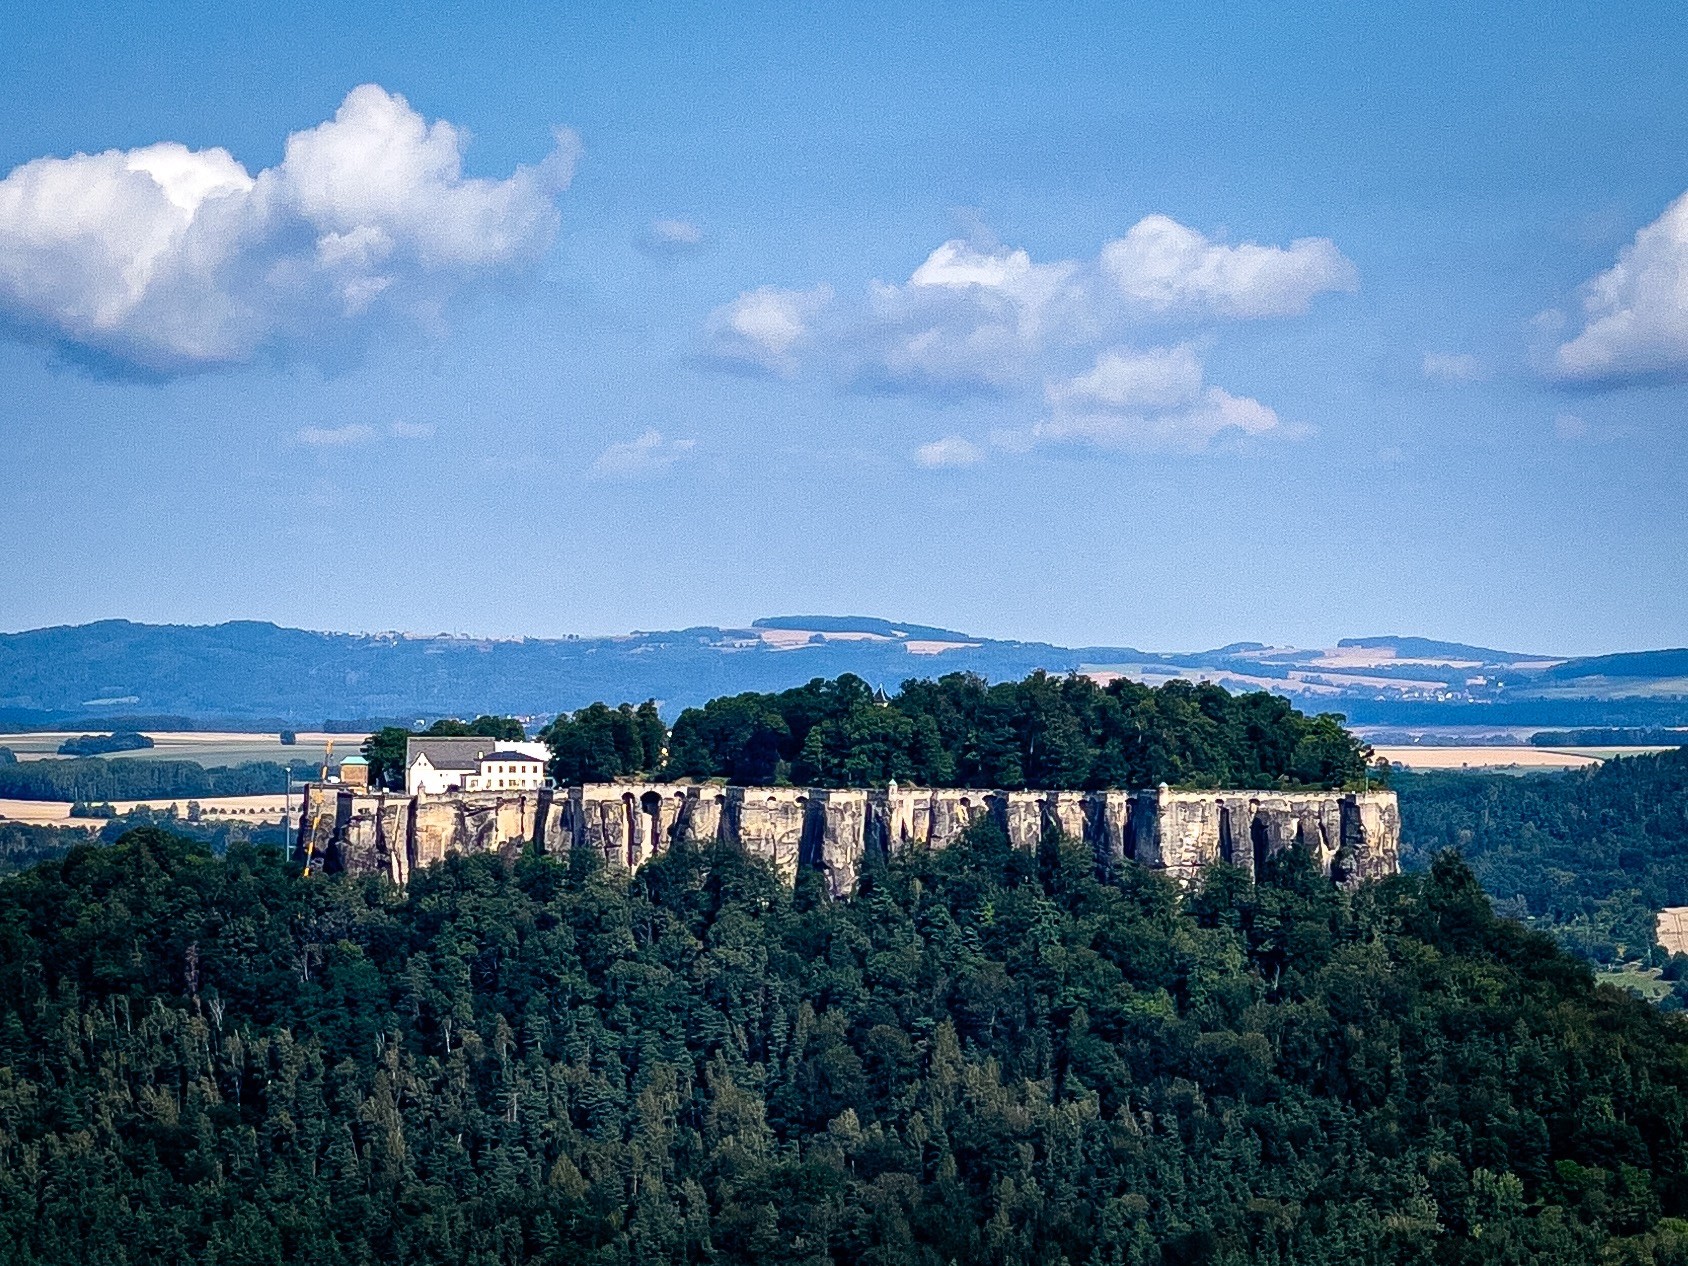  Festung, umgeben von dichtem Wald, unter einem blauen Himmel mit verstreuten Wolken. Entfernte Hügel und Felder im Hintergrund.

Das Schloss ist die Festung Königstein